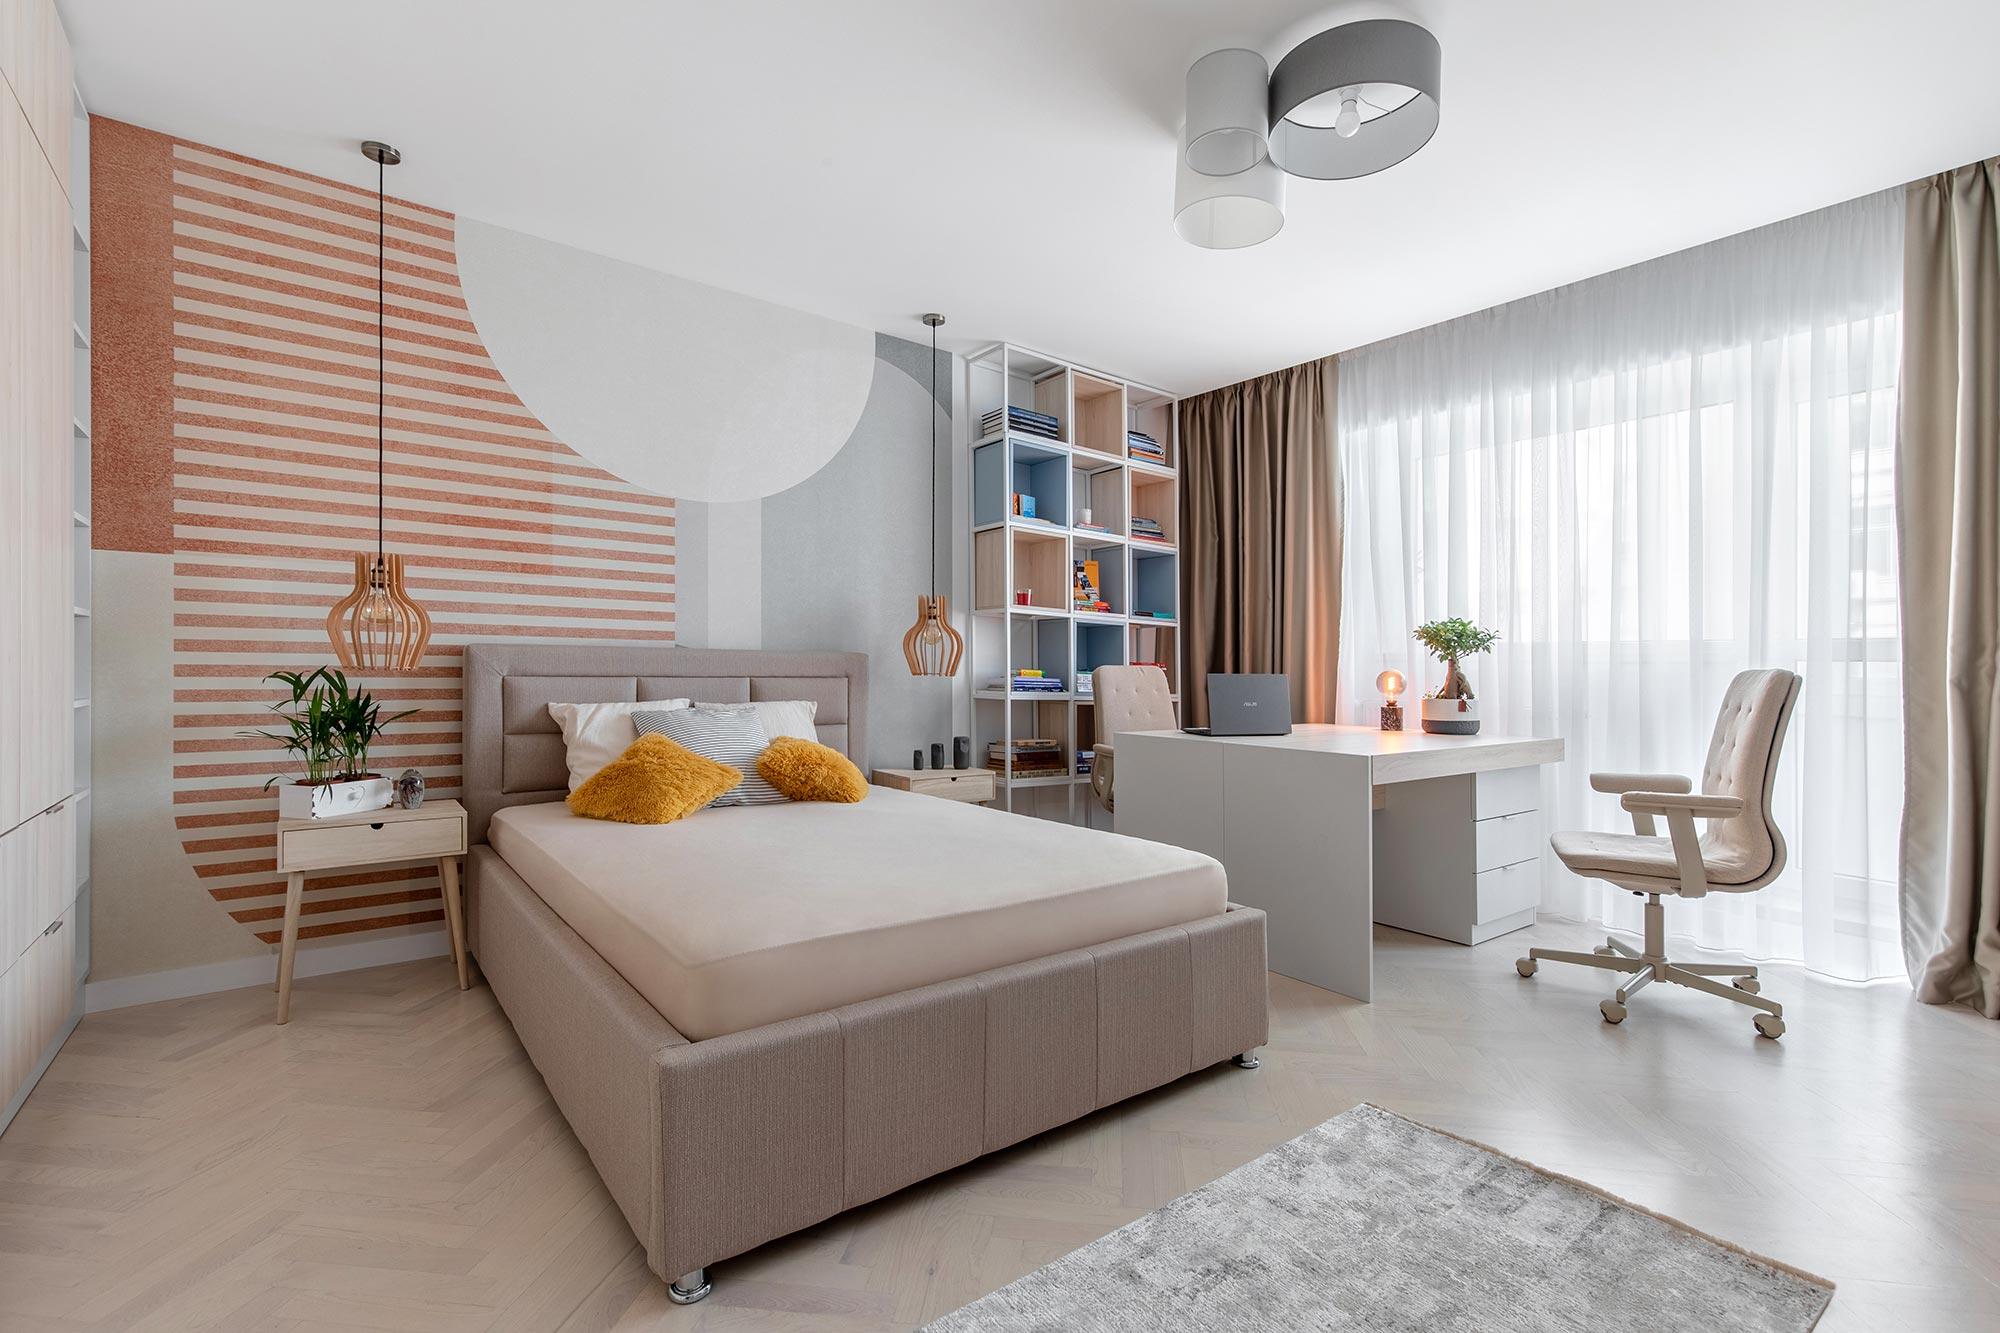 Dormitorio y despacho en casa – Proyecto «Young and free» de Simetrica Design